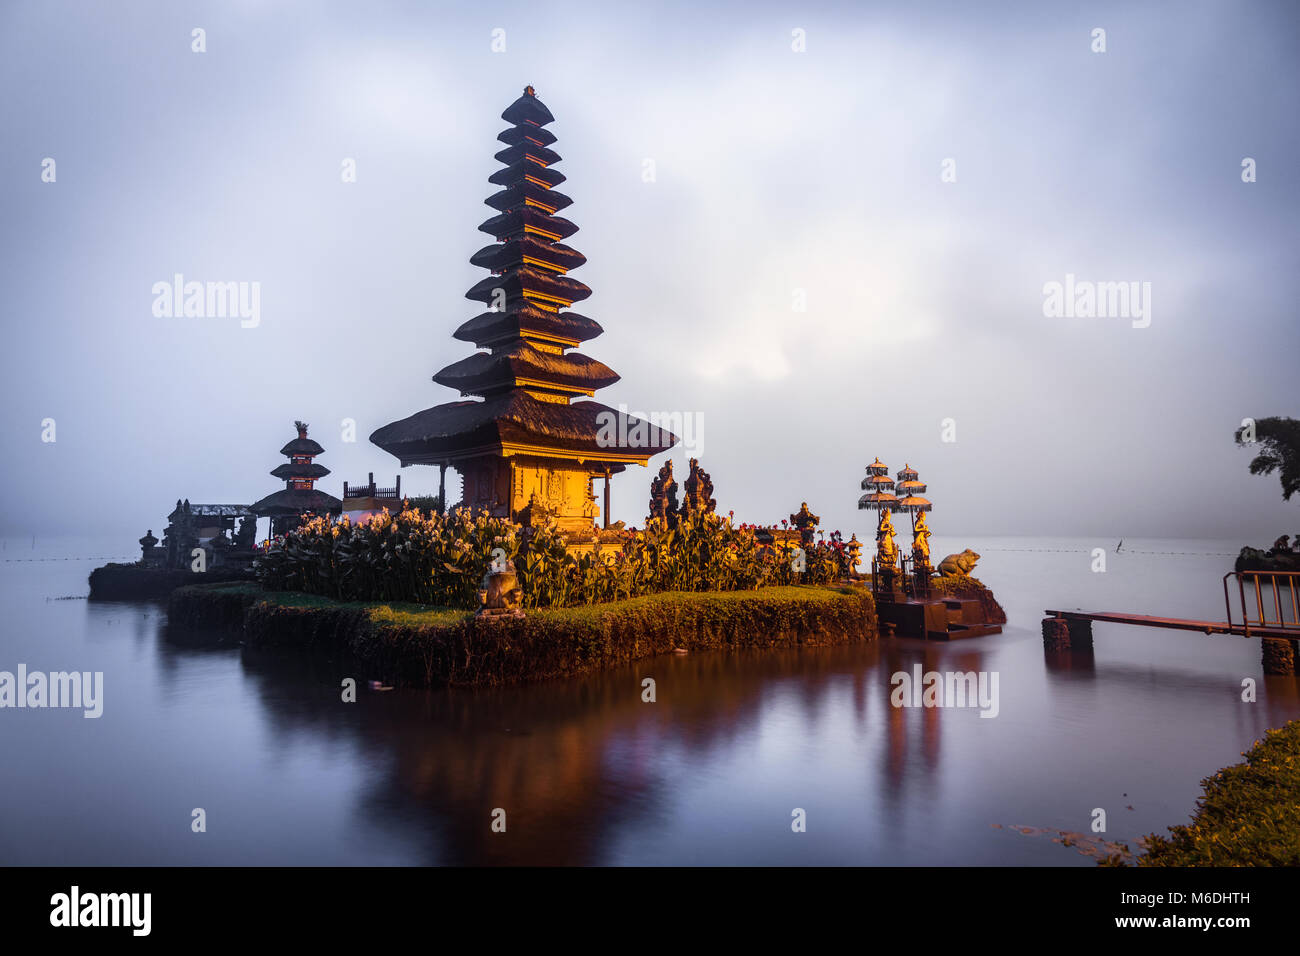 L'île flottante temple balinais située dans le nord de Bali sur un lac avec  sa belle architecture Photo Stock - Alamy